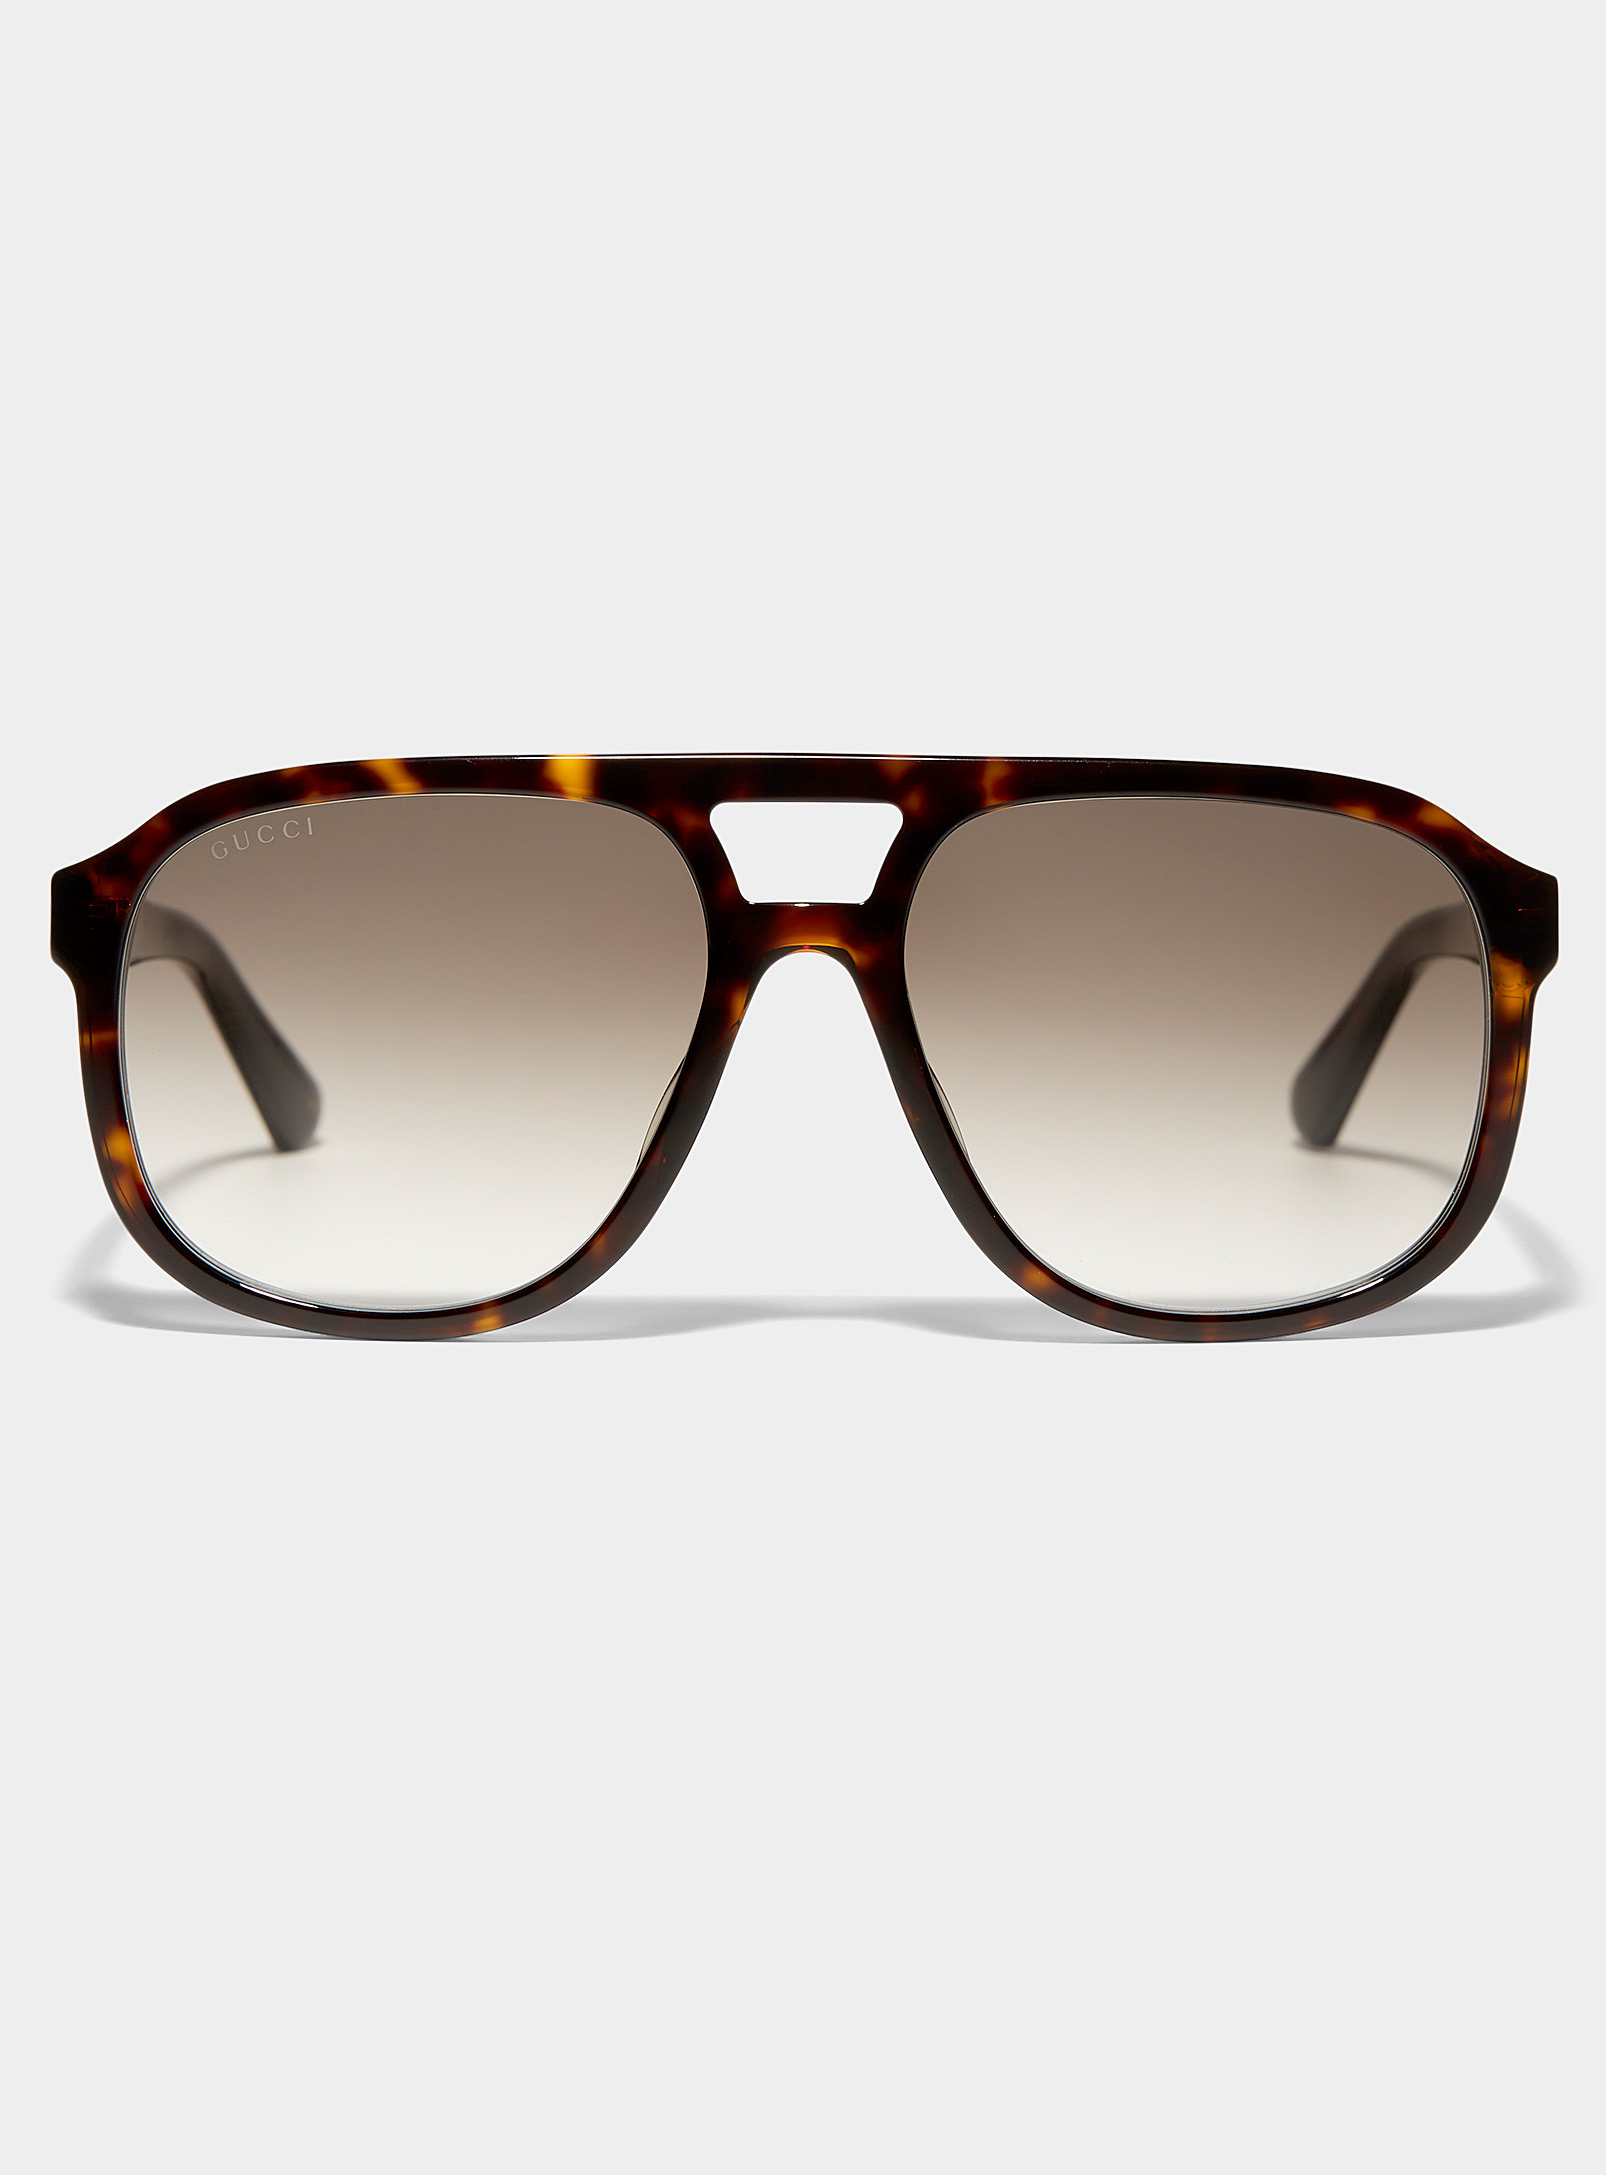 Gucci Turtle Shell Aviator Sunglasses In Brown